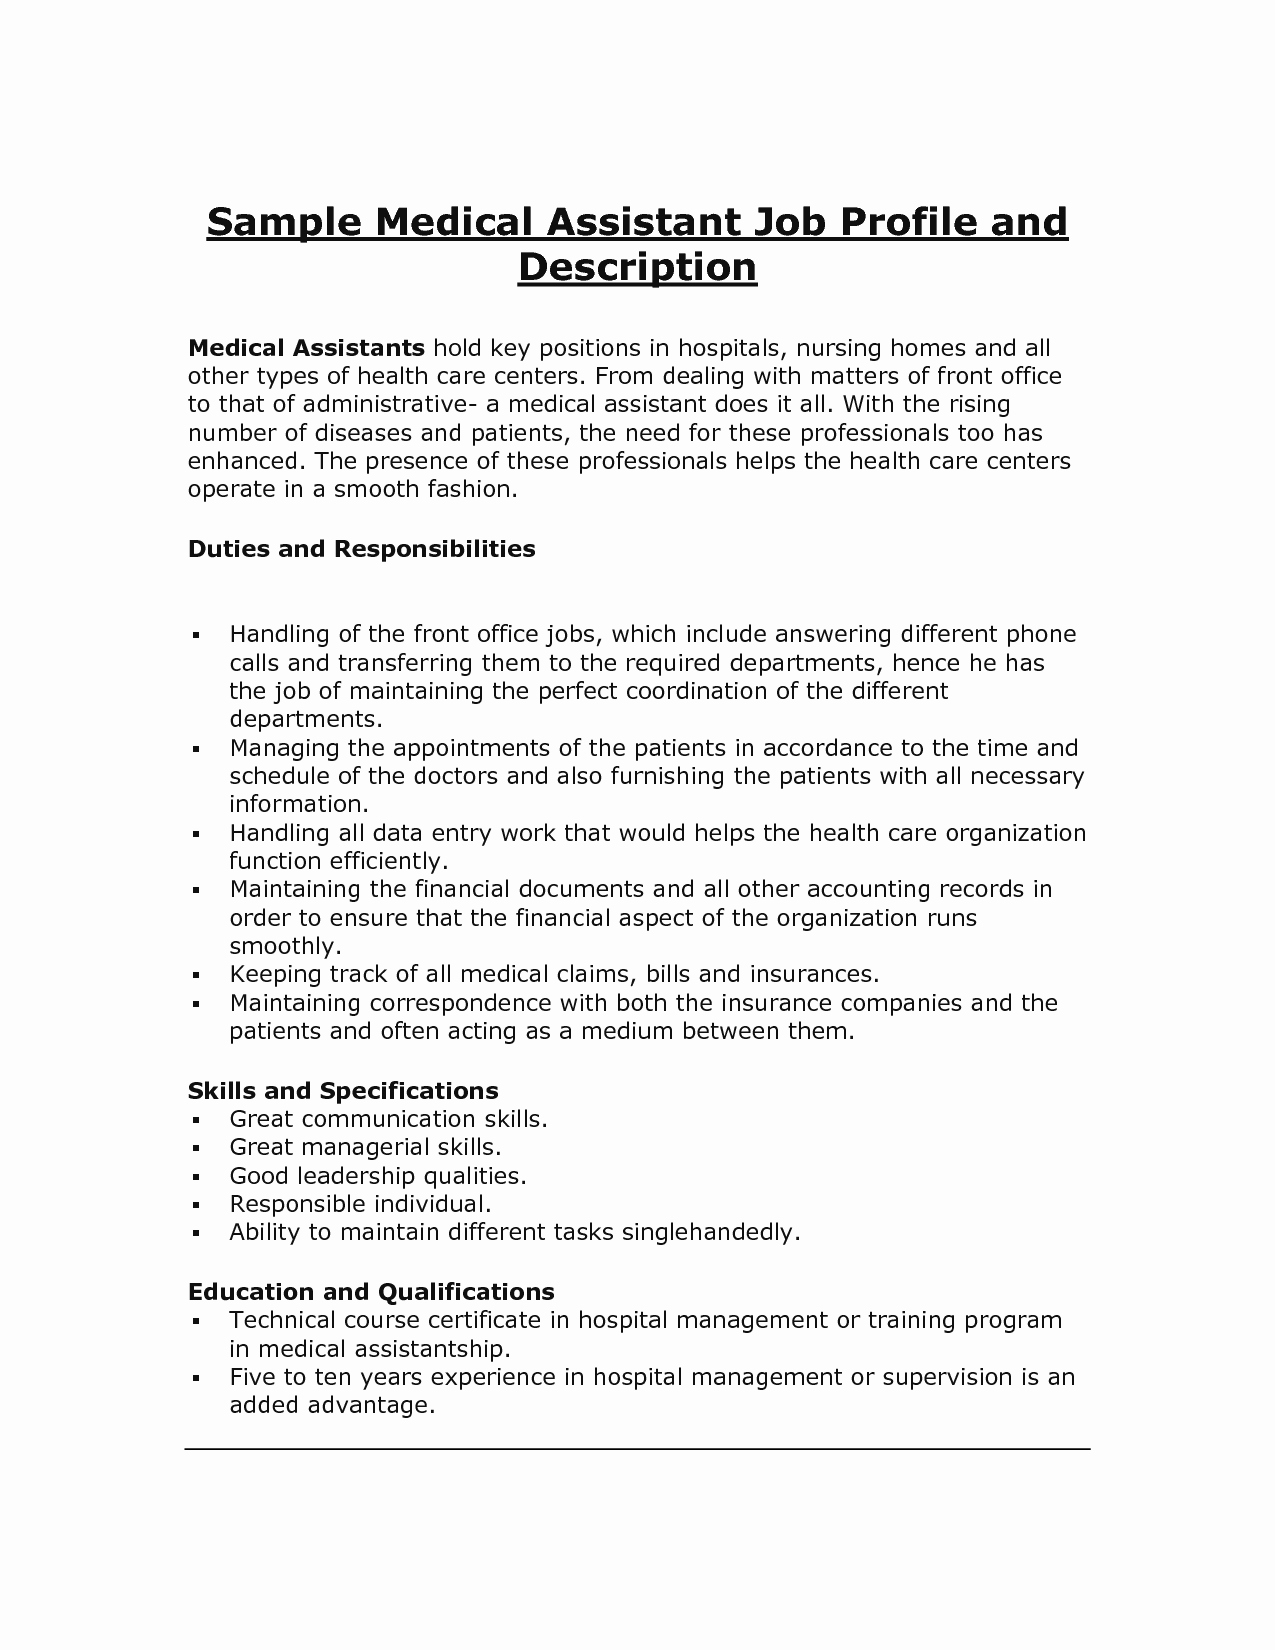 10 Sample Resume for Medical assistant Job Description